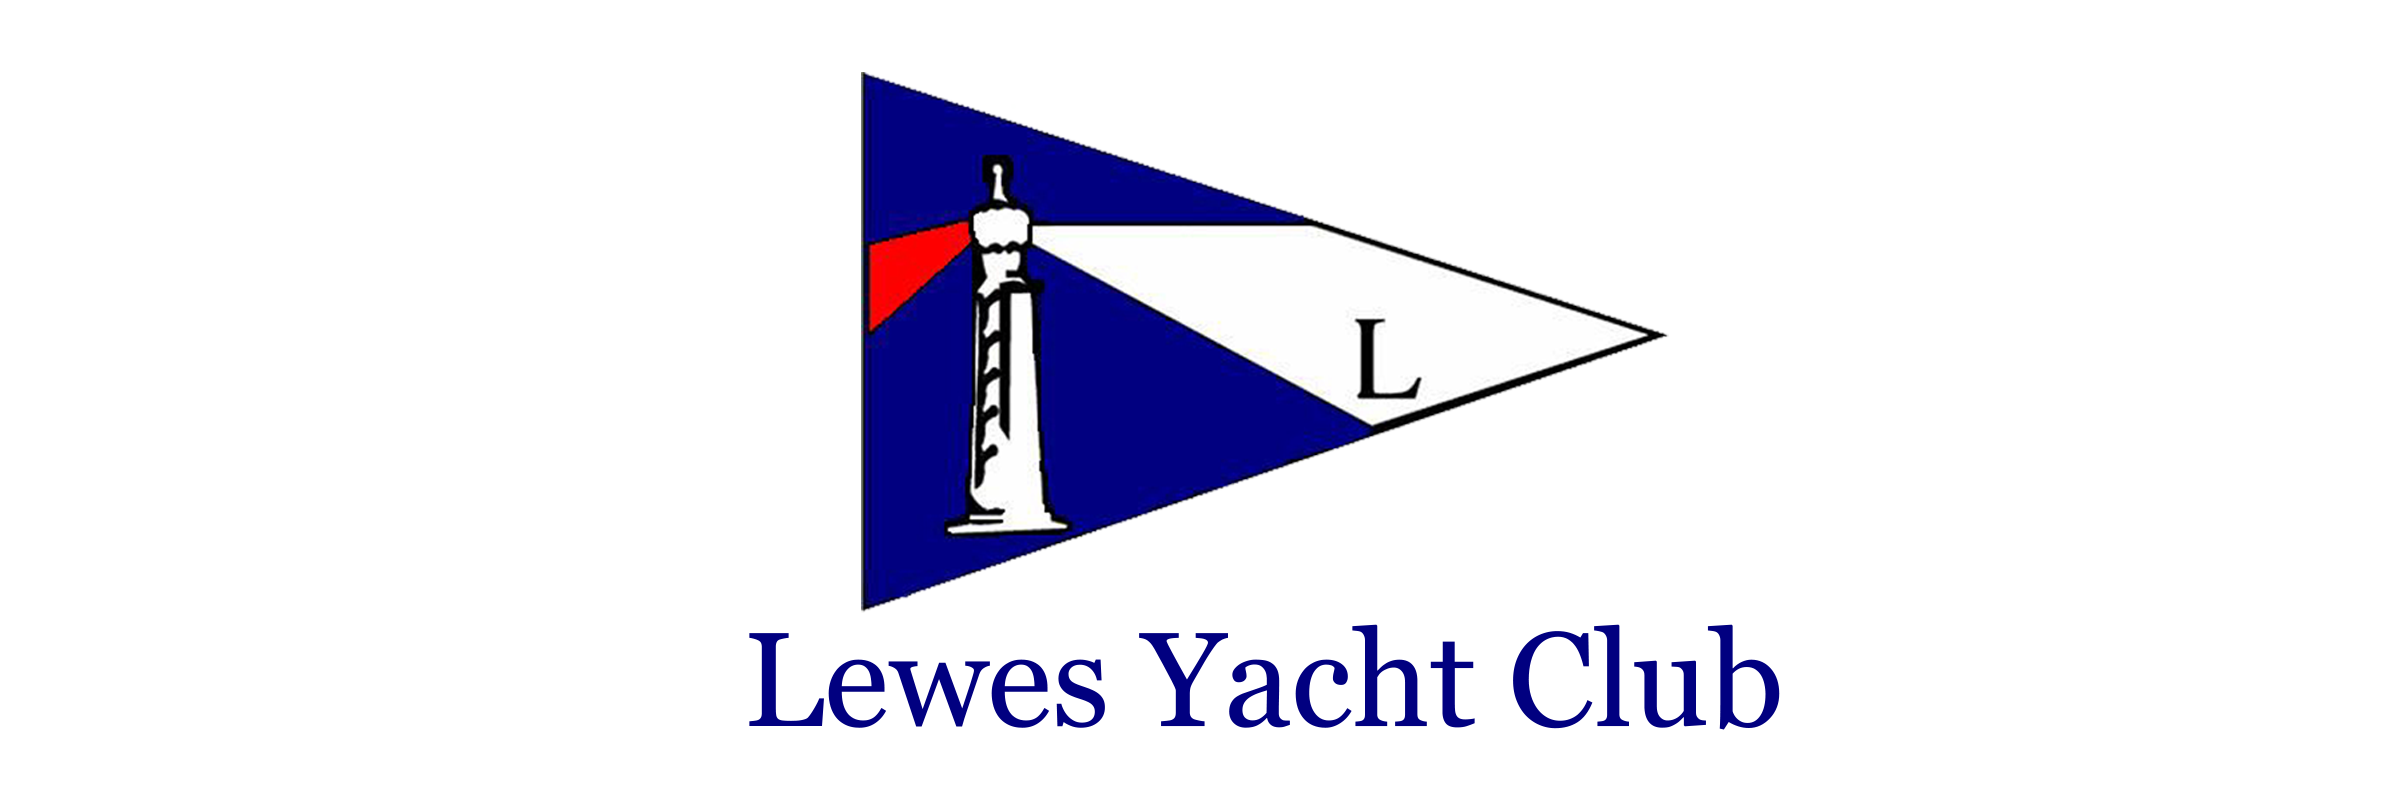 lewes yacht club foundation